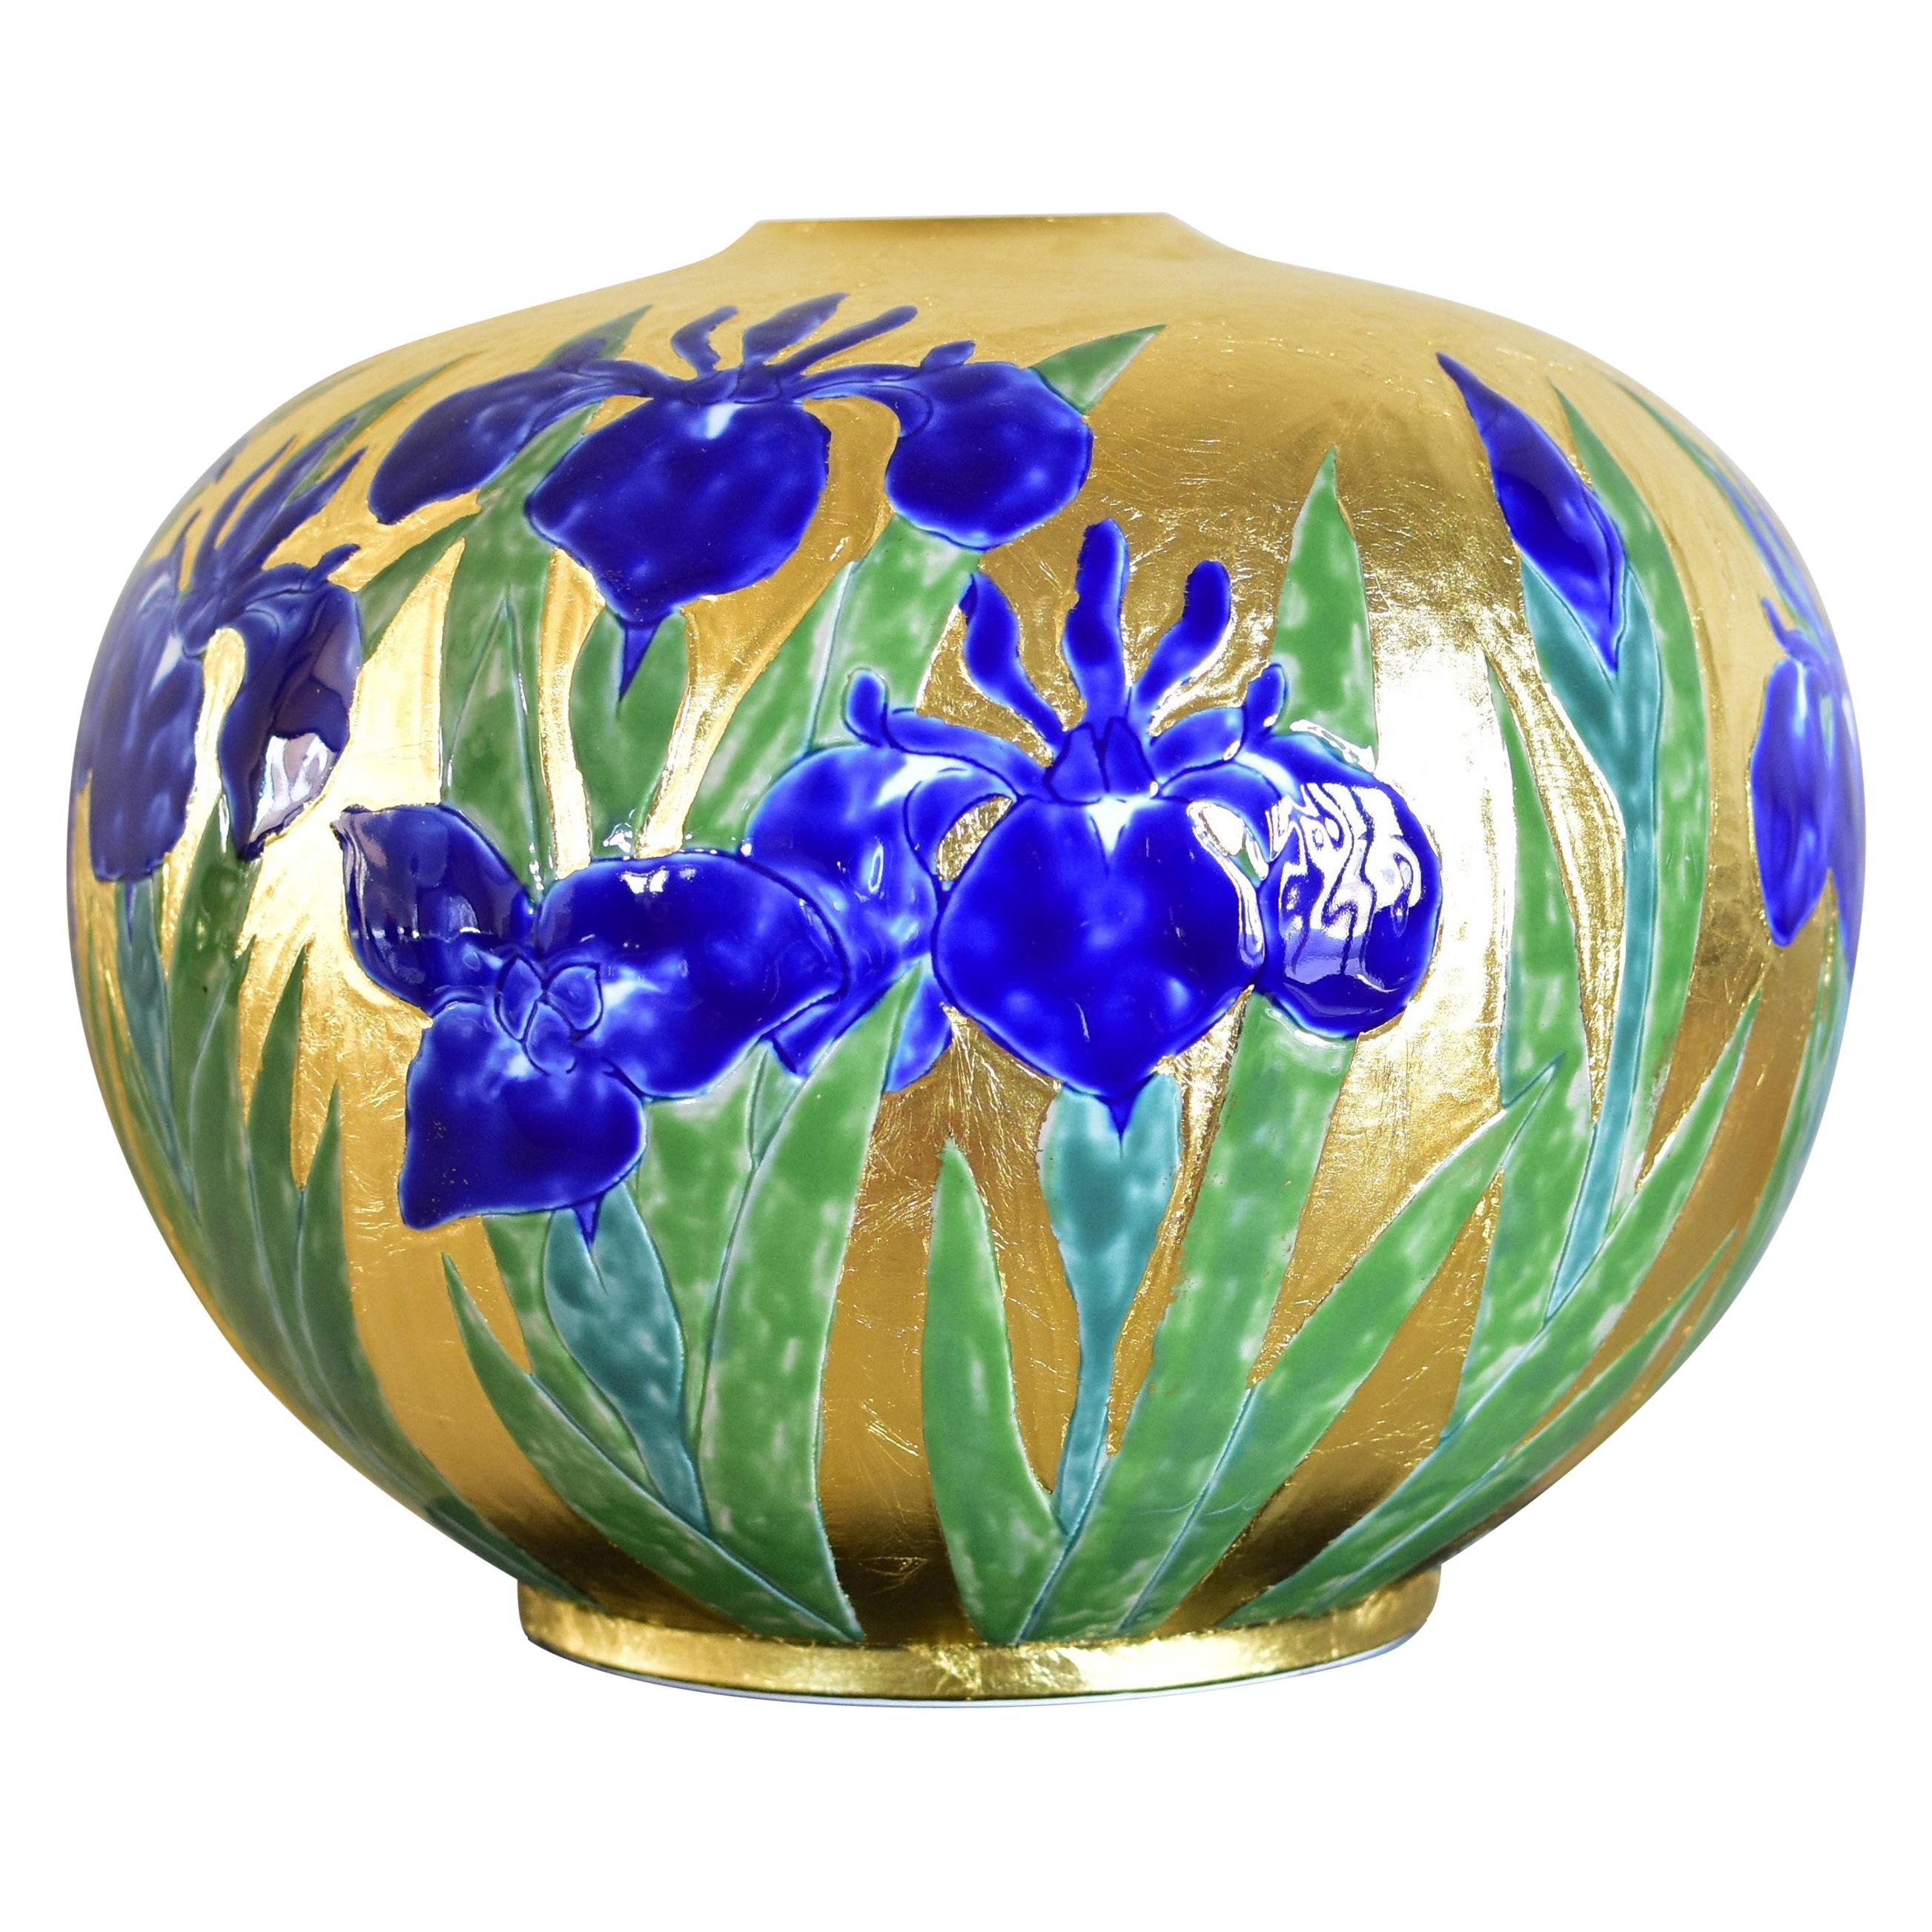 Exquisite japanische Vase aus zeitgenössischem Porzellan mit Blattgold, verziert mit Handmalerei in tiefem Blau und schönen Grüntönen auf einem atemberaubend geformten Körper. Dieses Stück stammt von einem Brennmeister in dritter Generation aus der